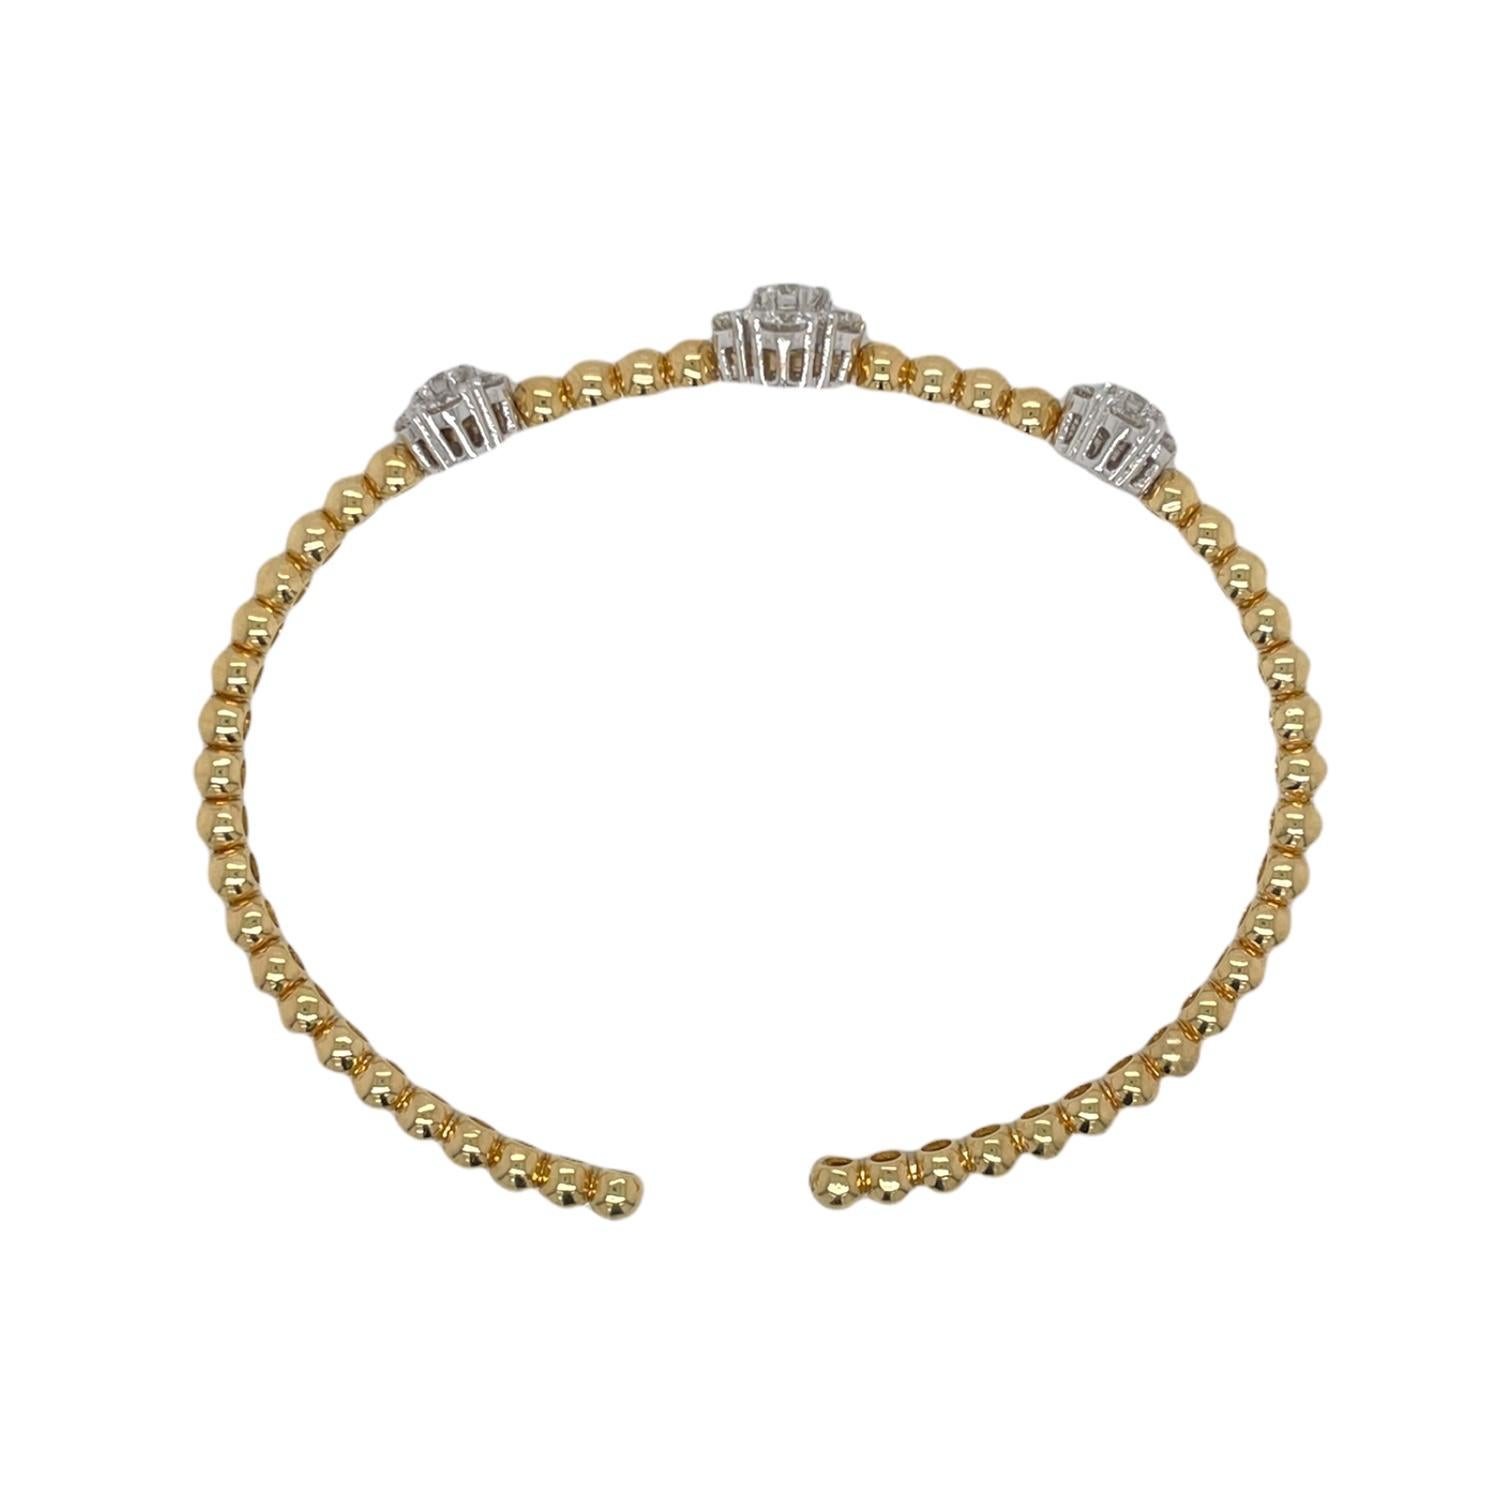 Un bracelet bangle flexible en or jaune et blanc 18 carats pour femme, composé de grappes de diamants floraux. Le bracelet contient 3 grappes de diamants floraux totalisant 21 diamants ronds de taille brillant, 1,88 ctw. Les diamants sont presque